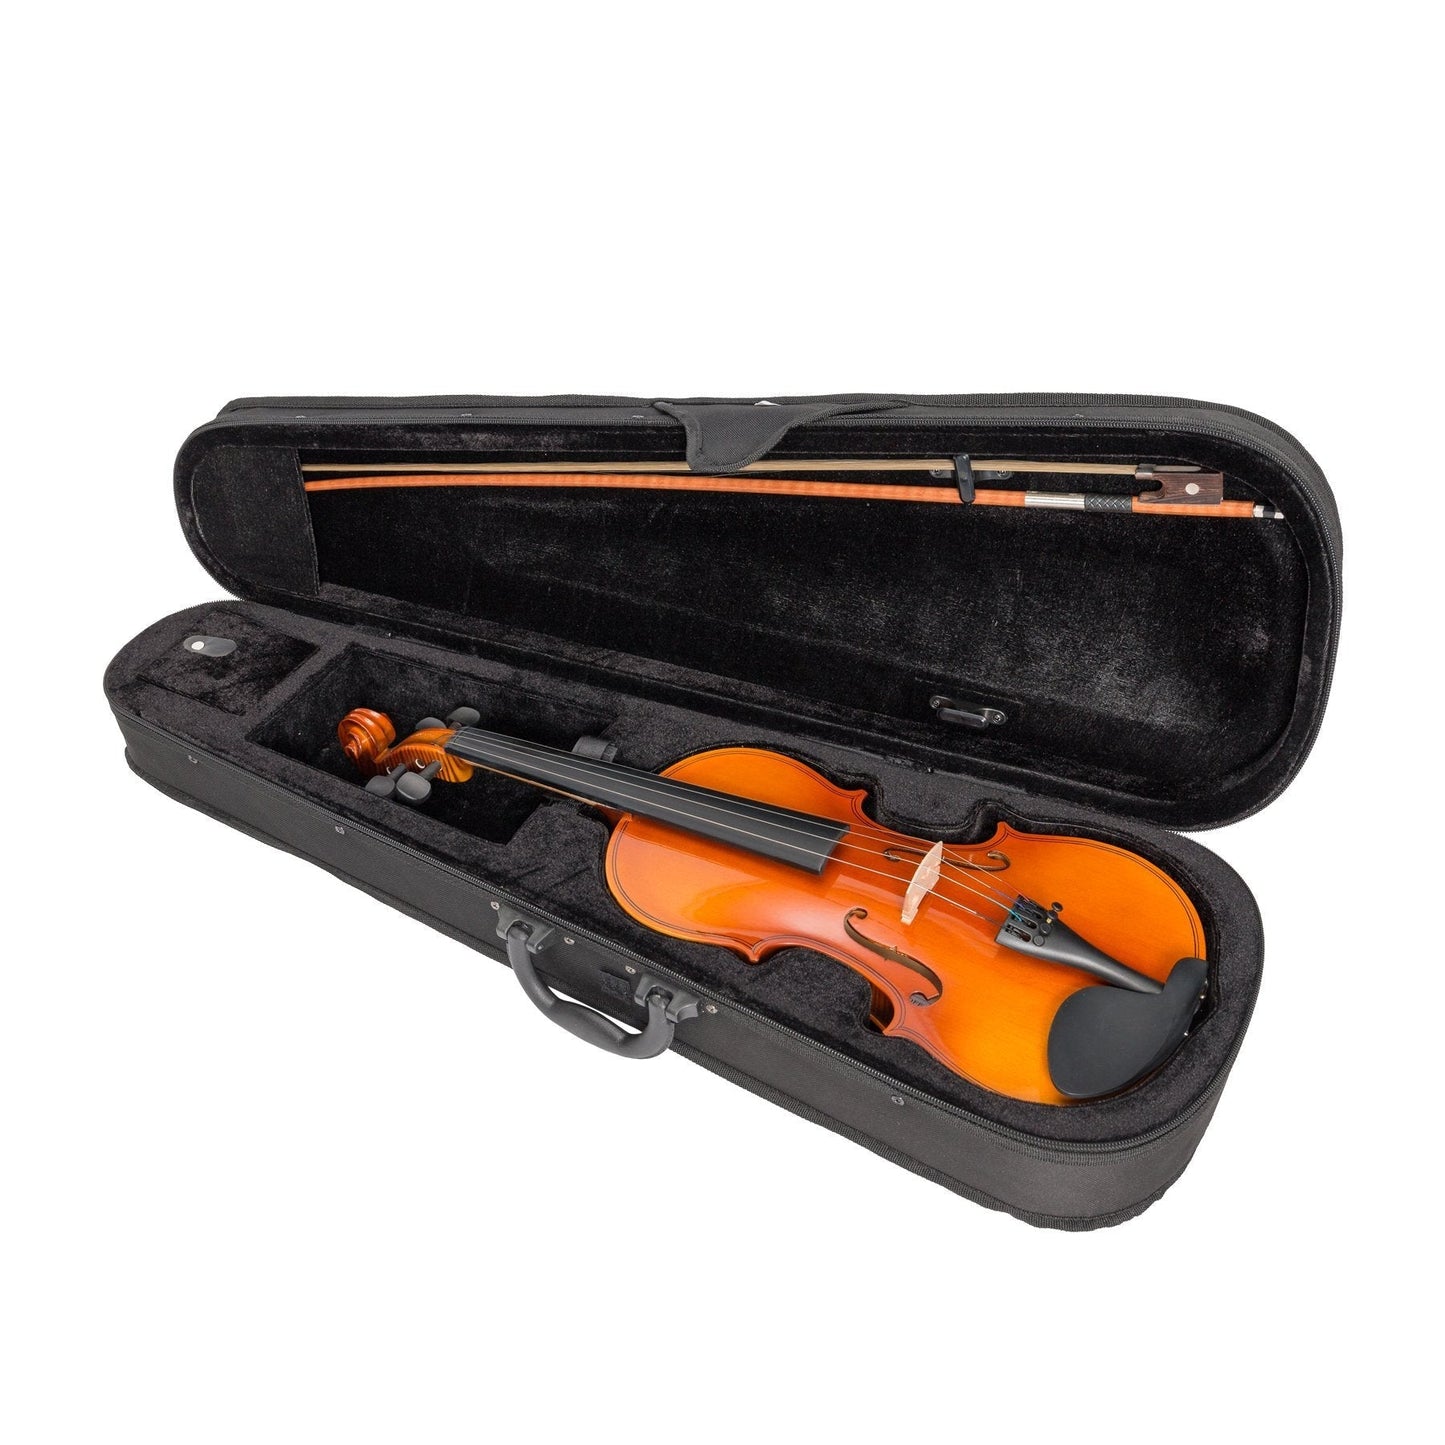 Steinhoff 1/2 Size Student Violin Set (Natural Gloss)